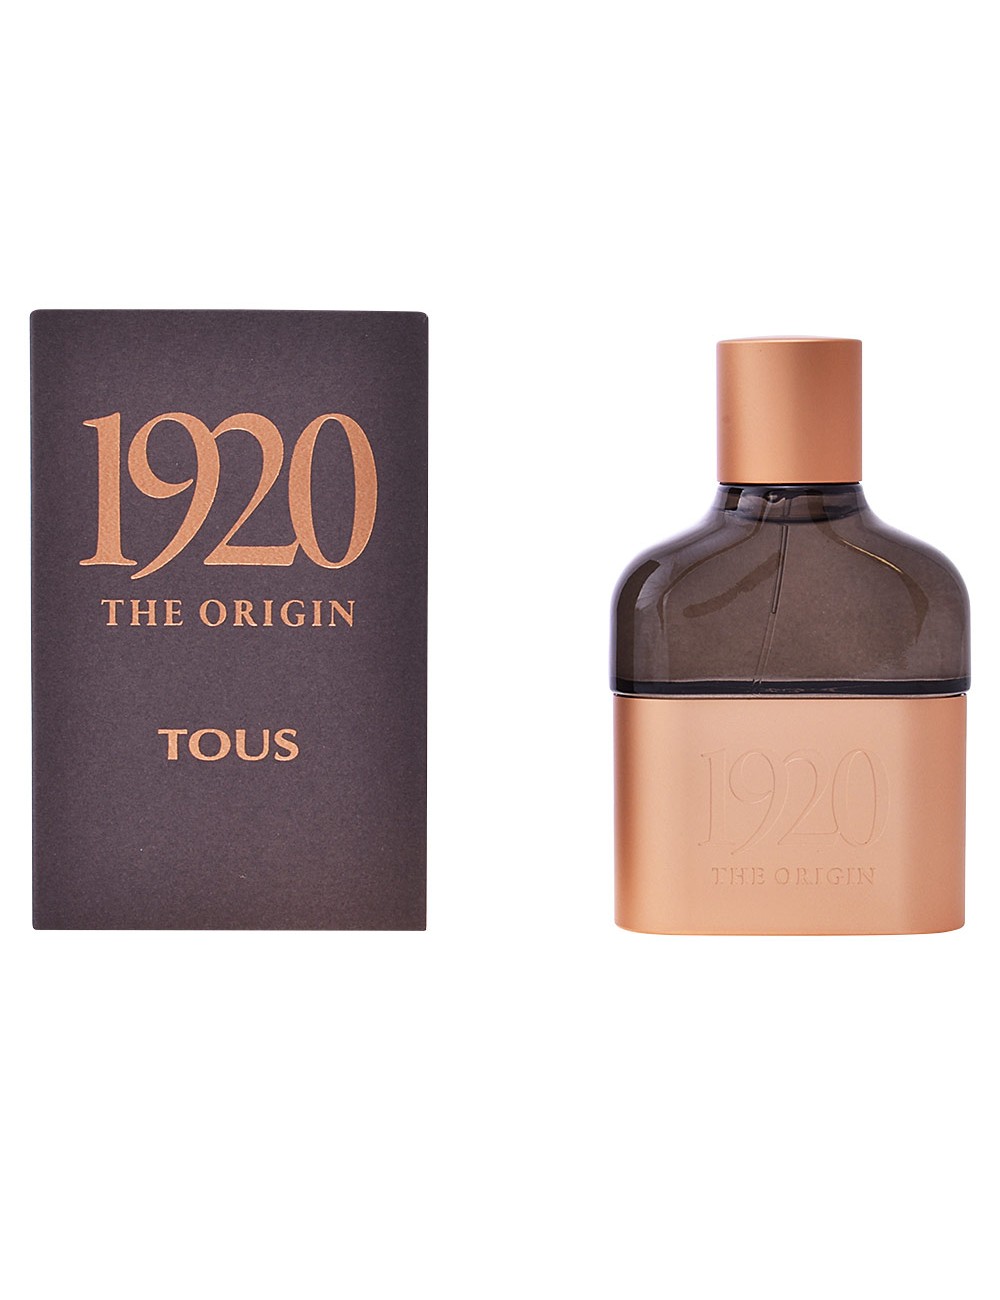 1920 THE ORIGIN eau de parfum  60 ml - TOUS